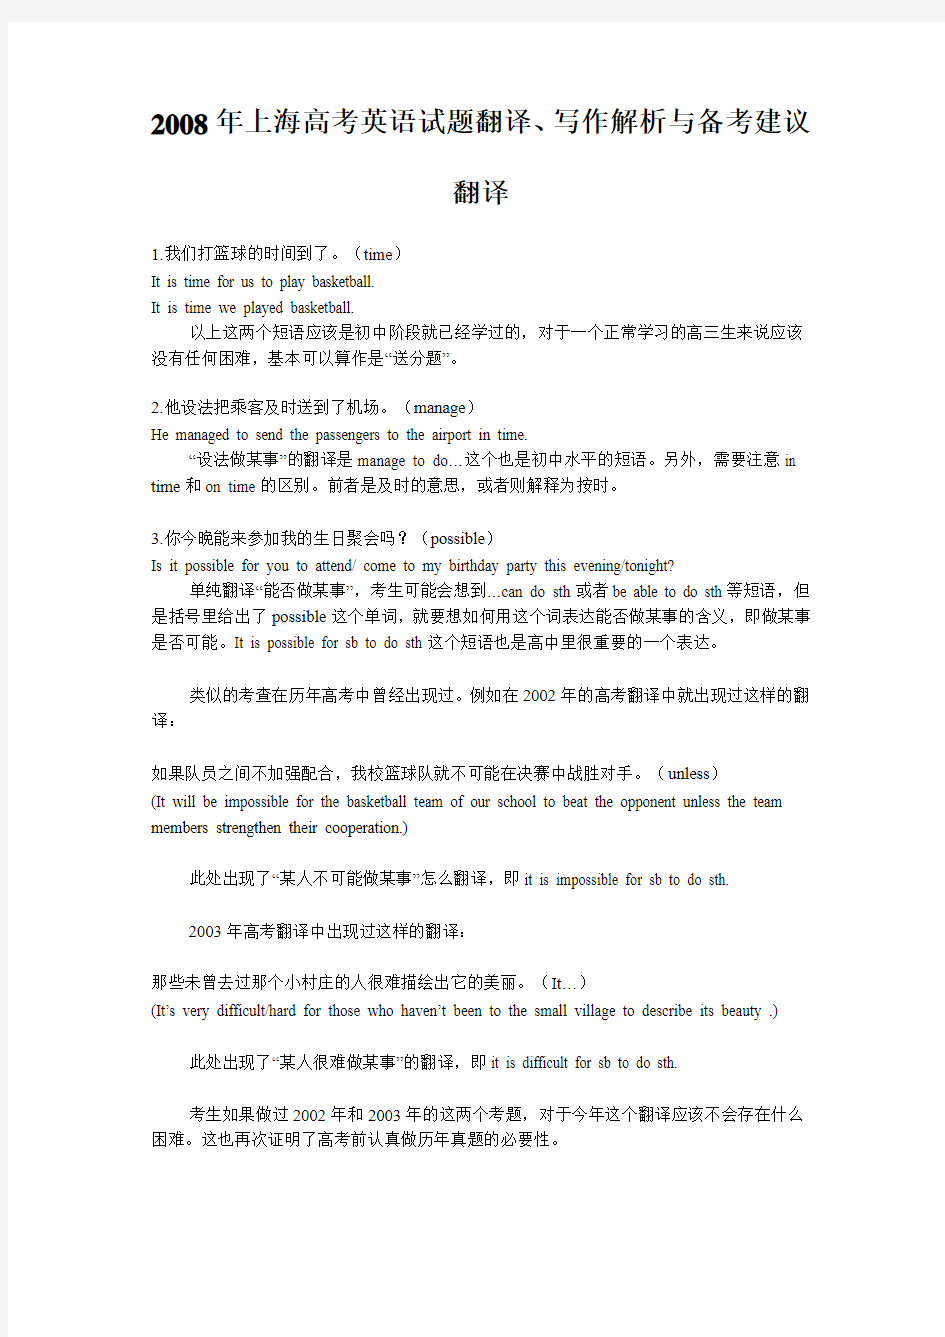 上海高考英语试题翻译、写作解析与备考建议